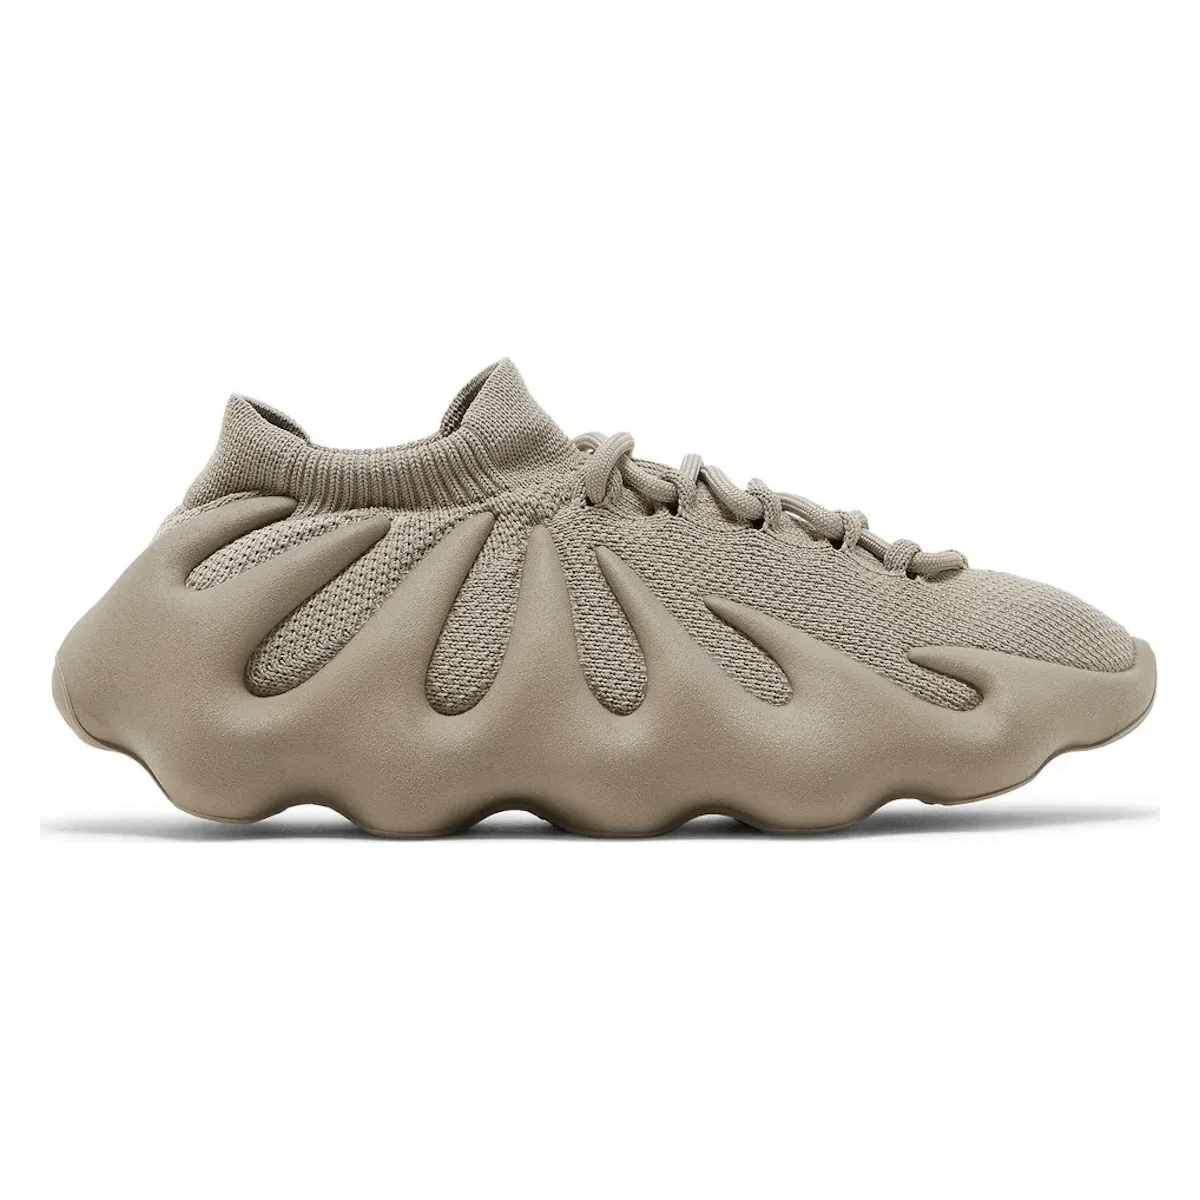 adidas Yeezy 450 "Stone Flax"